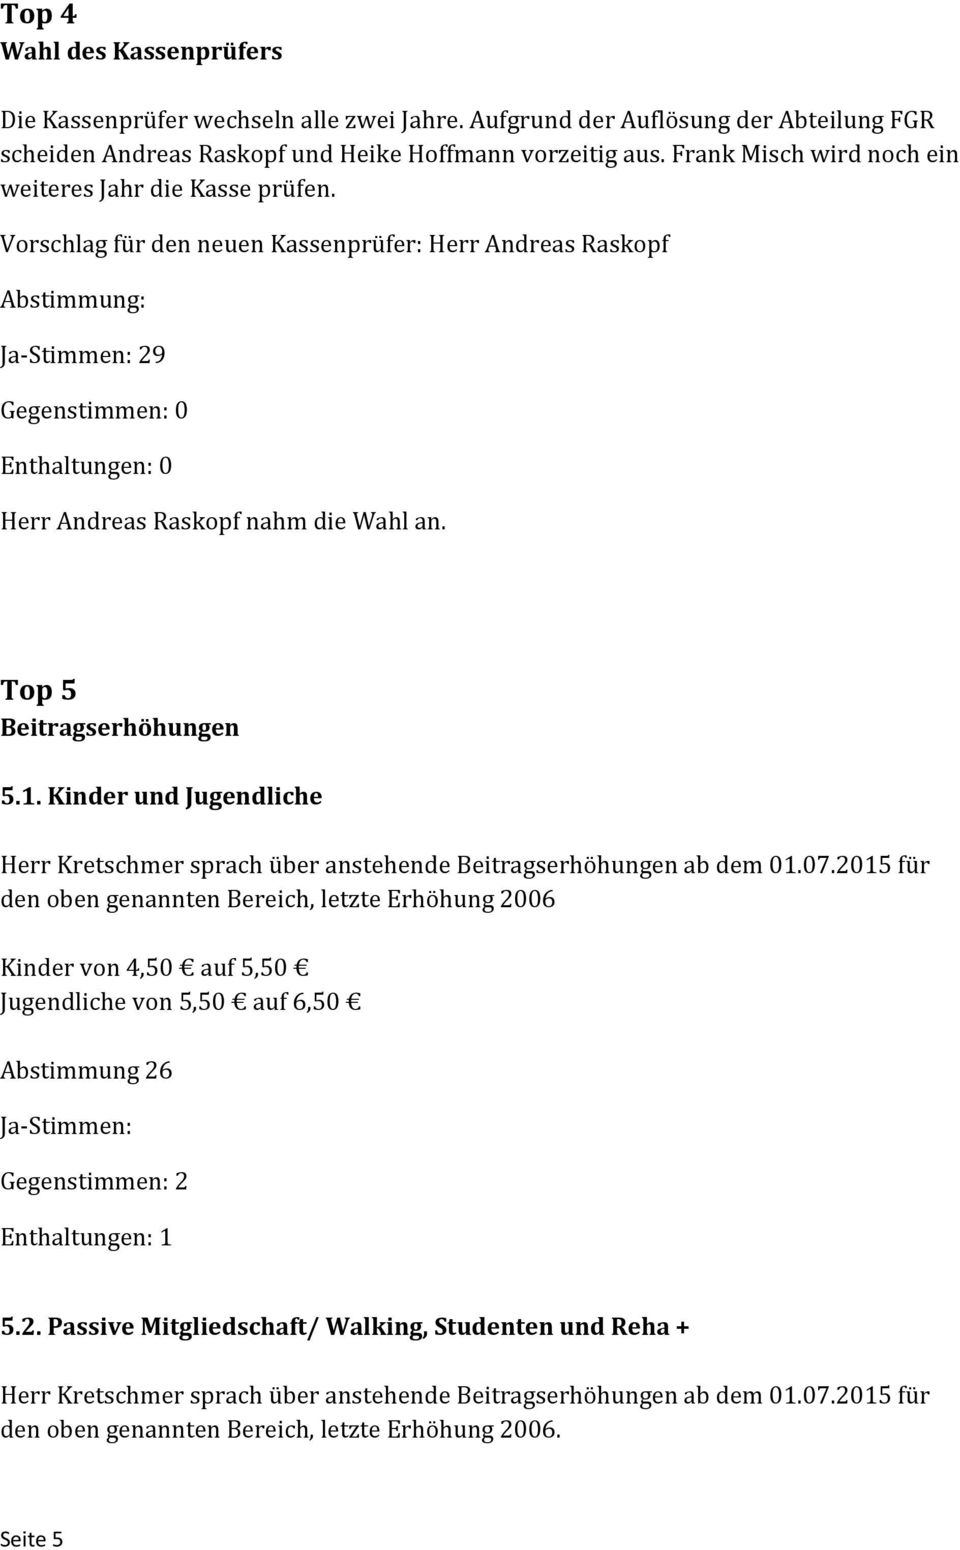 Vorschlag für den neuen Kassenprüfer: Herr Andreas Raskopf Abstimmung: Ja Stimmen: 29 Gegenstimmen: 0 Enthaltungen: 0 Herr Andreas Raskopf nahm die Wahl an. Top 5 Beitragserhöhungen 5.1.